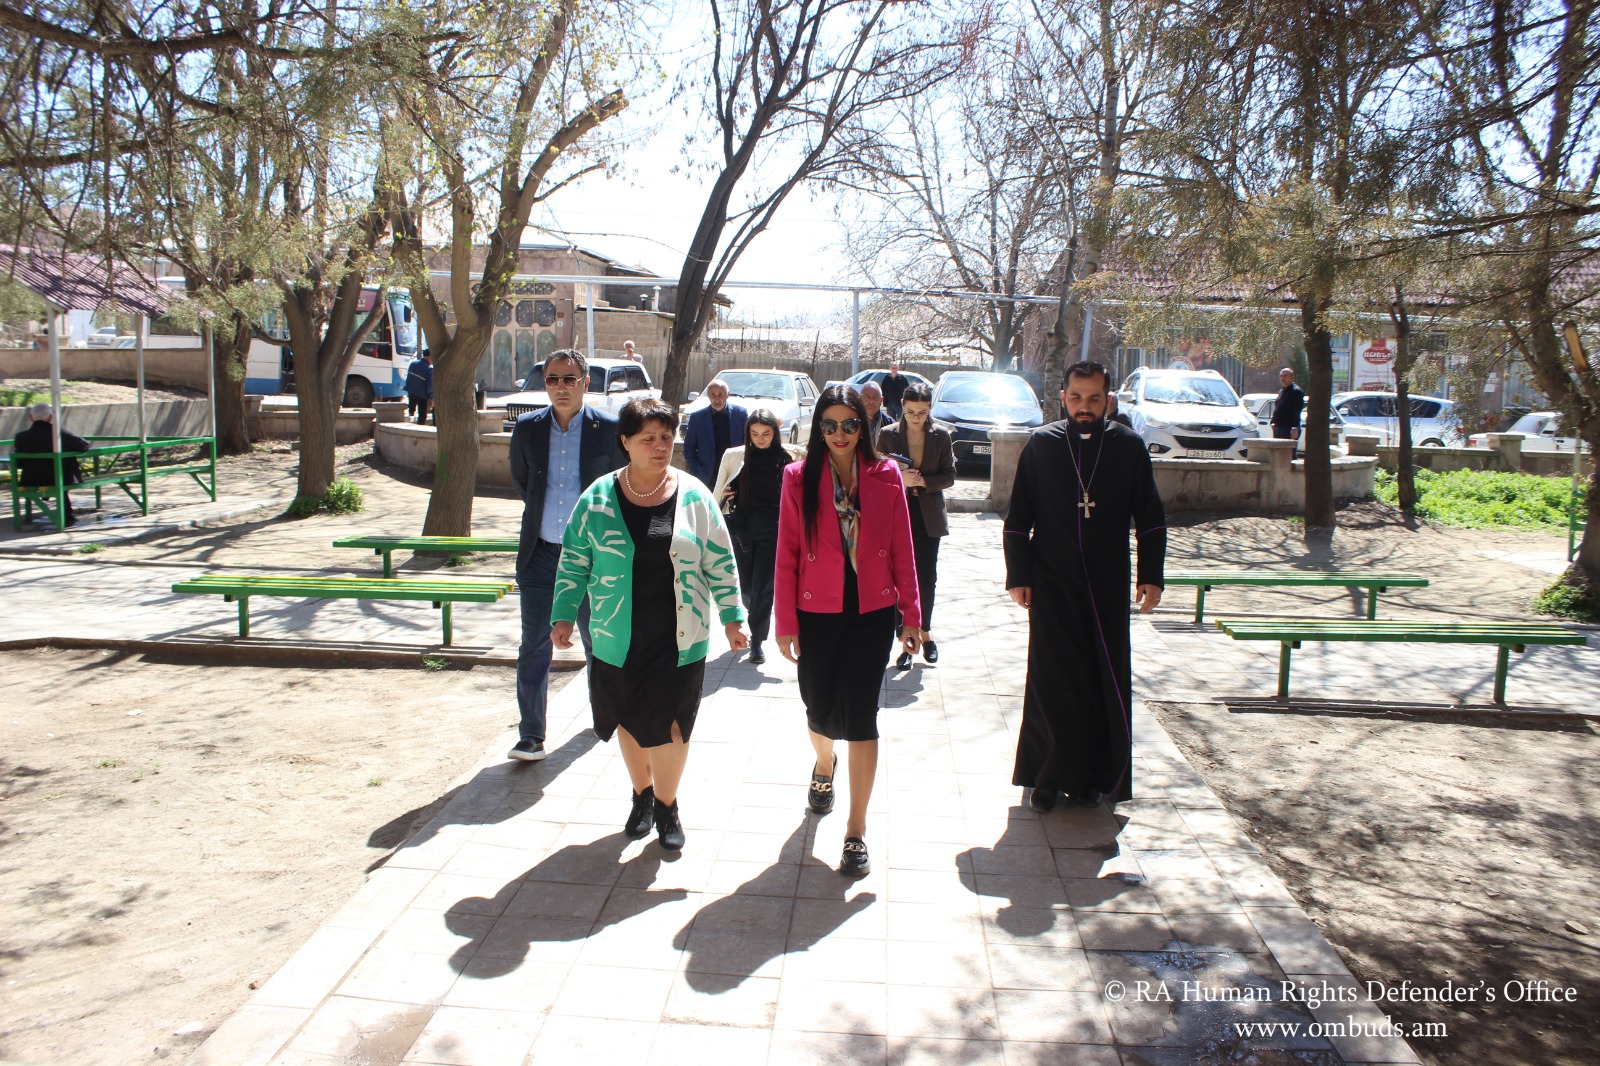 Հաբ-Նիսանի առթիվ ՀՀ ՄԻՊ-ն այցելել է Հայաստանում ասորական ամենախոշոր համայնք՝ Վերին Դվին